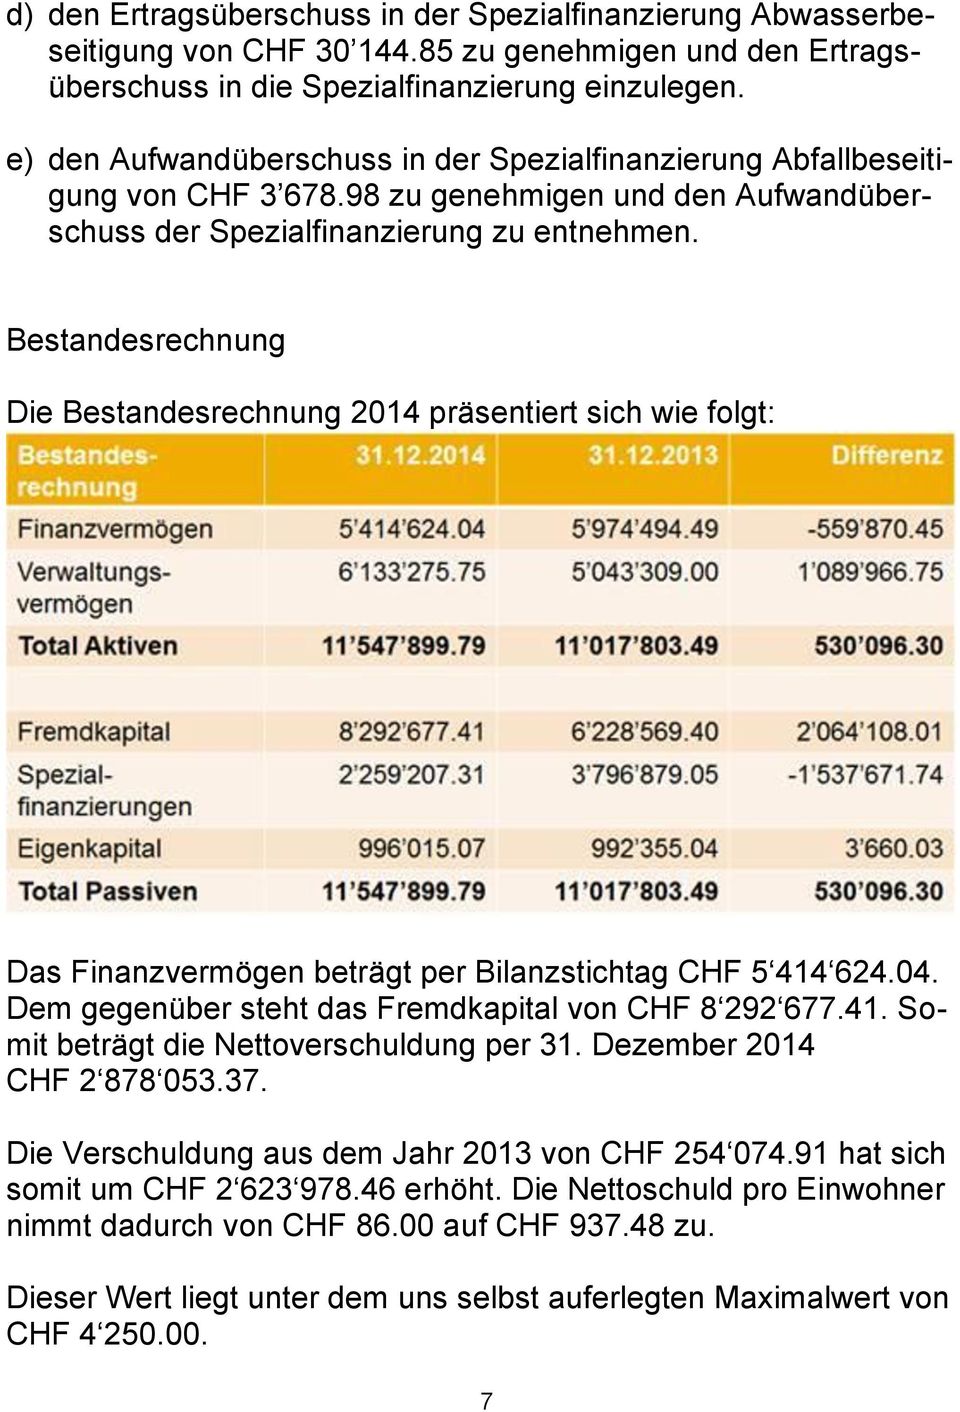 Bestandesrechnung Die Bestandesrechnung 2014 präsentiert sich wie folgt: Das Finanzvermögen beträgt per Bilanzstichtag CHF 5 414 624.04. Dem gegenüber steht das Fremdkapital von CHF 8 292 677.41. Somit beträgt die Nettoverschuldung per 31.